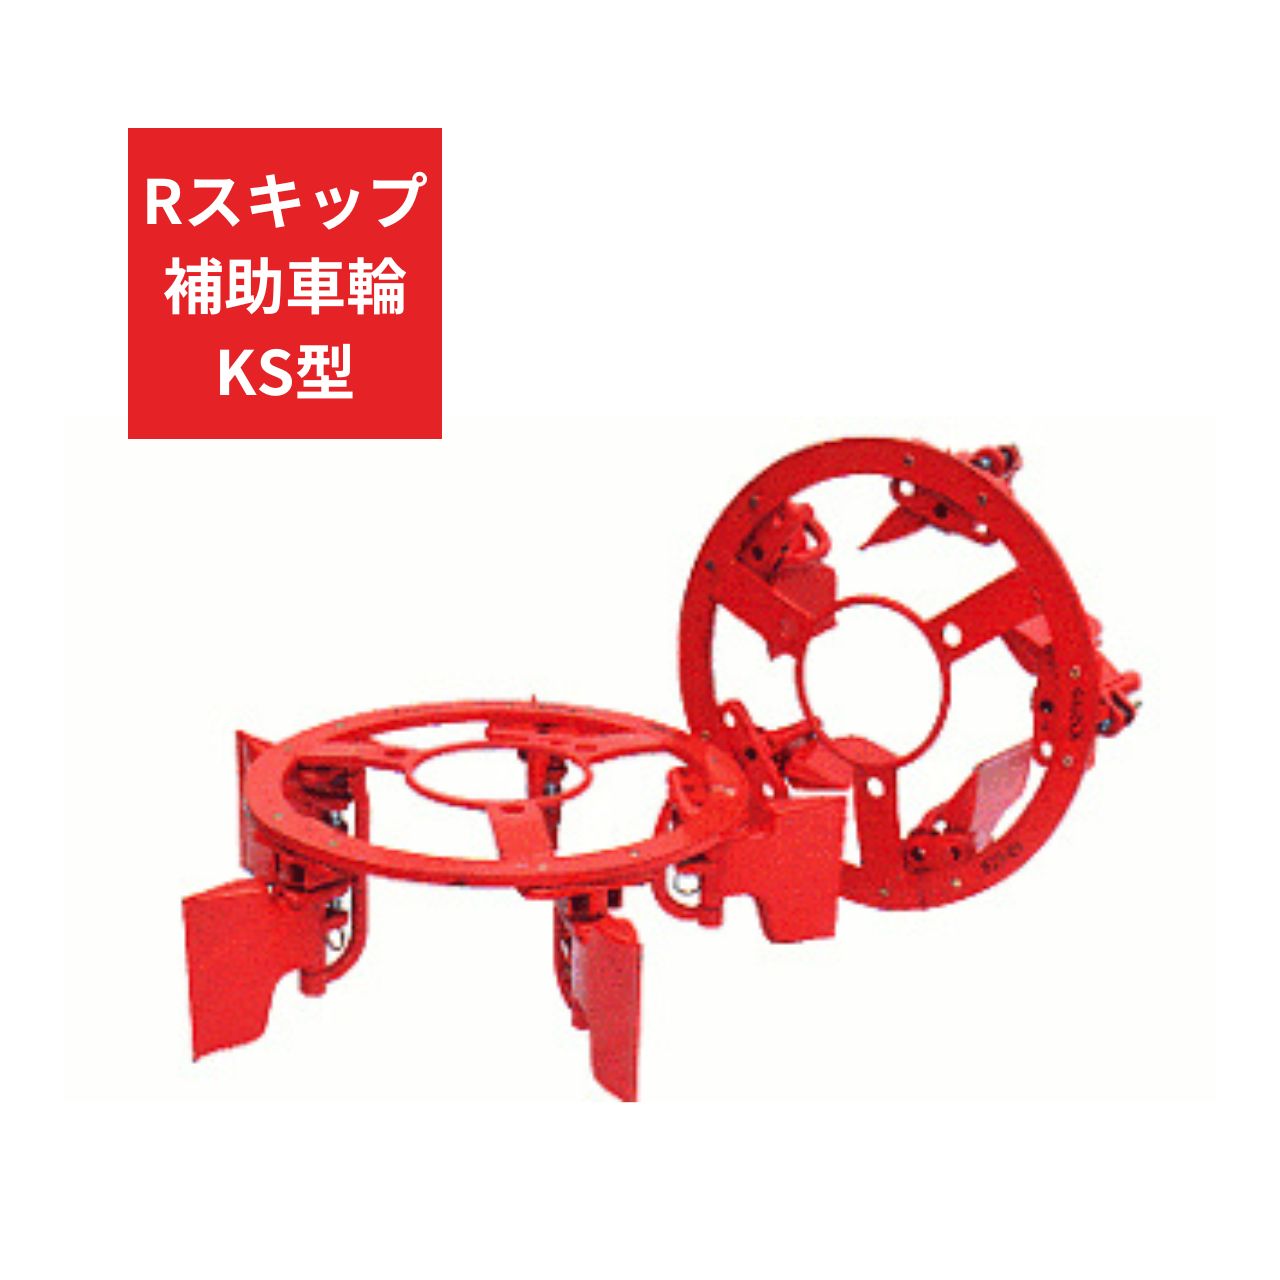 トラクター用 補助車輪 KS車輪 Rスキップ補助車輪KS ジョーニシ RKS250 12.4-26 通販